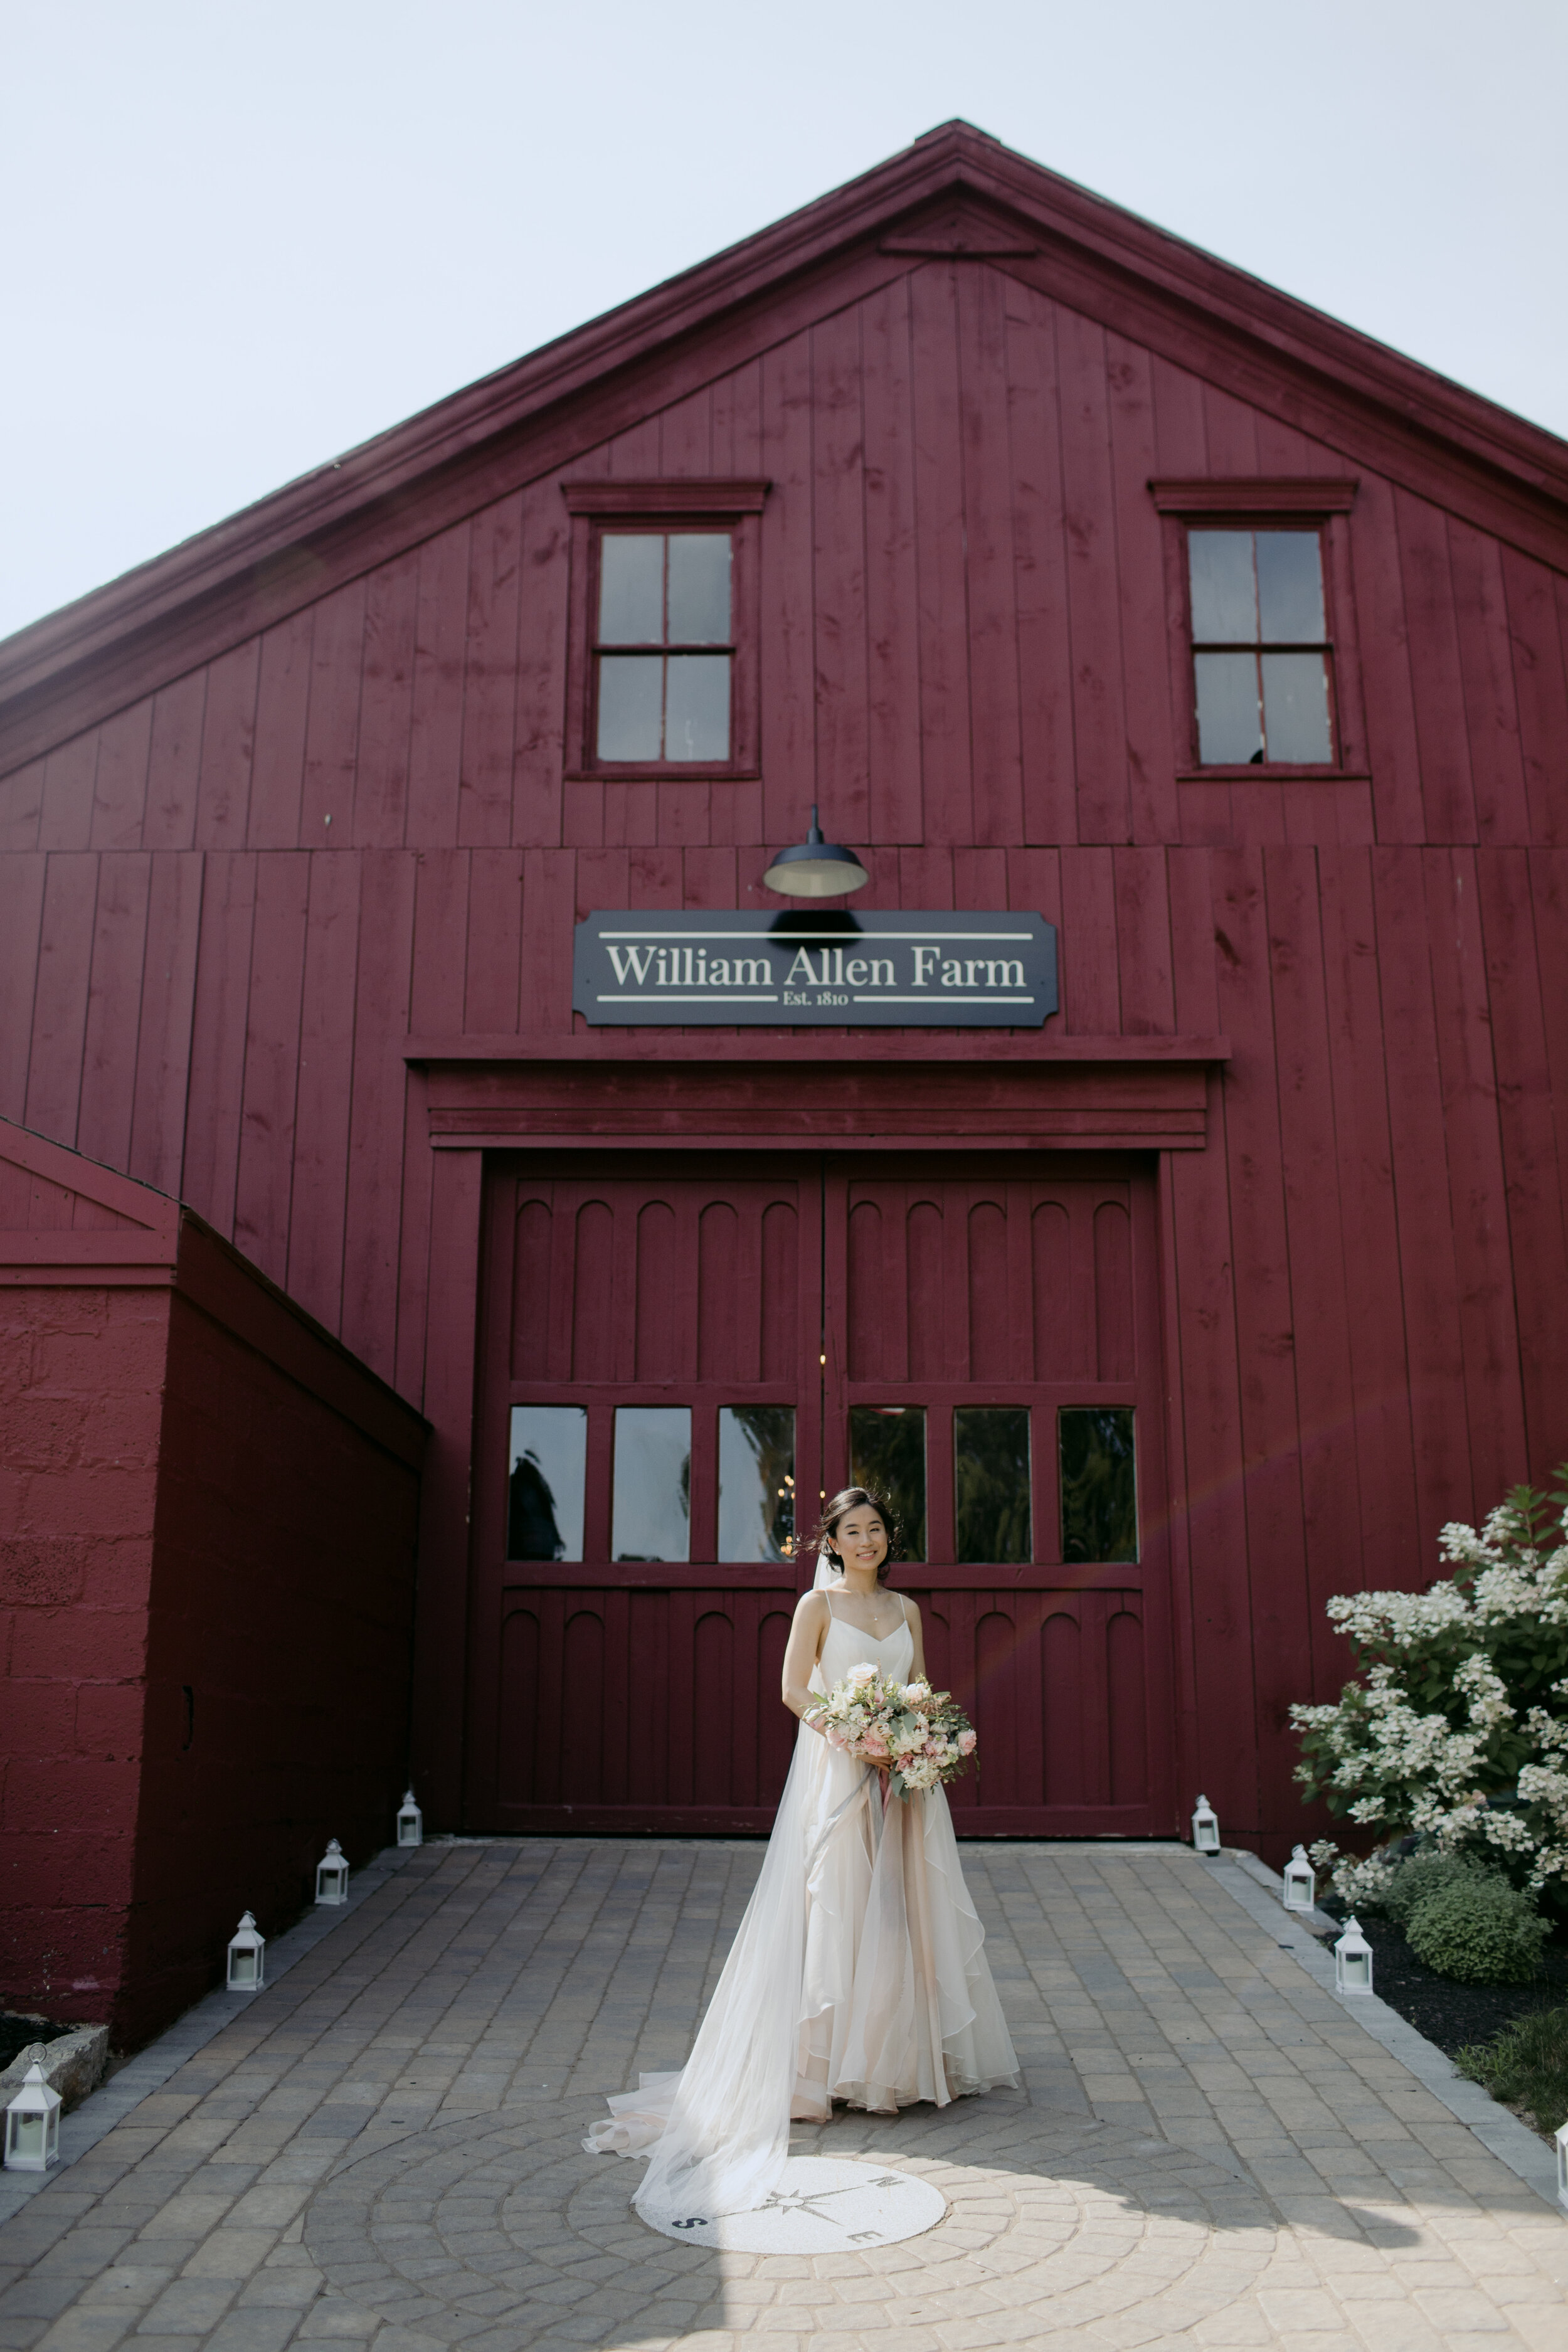 William Allen Farm Maine Wedding_072818_309.jpg